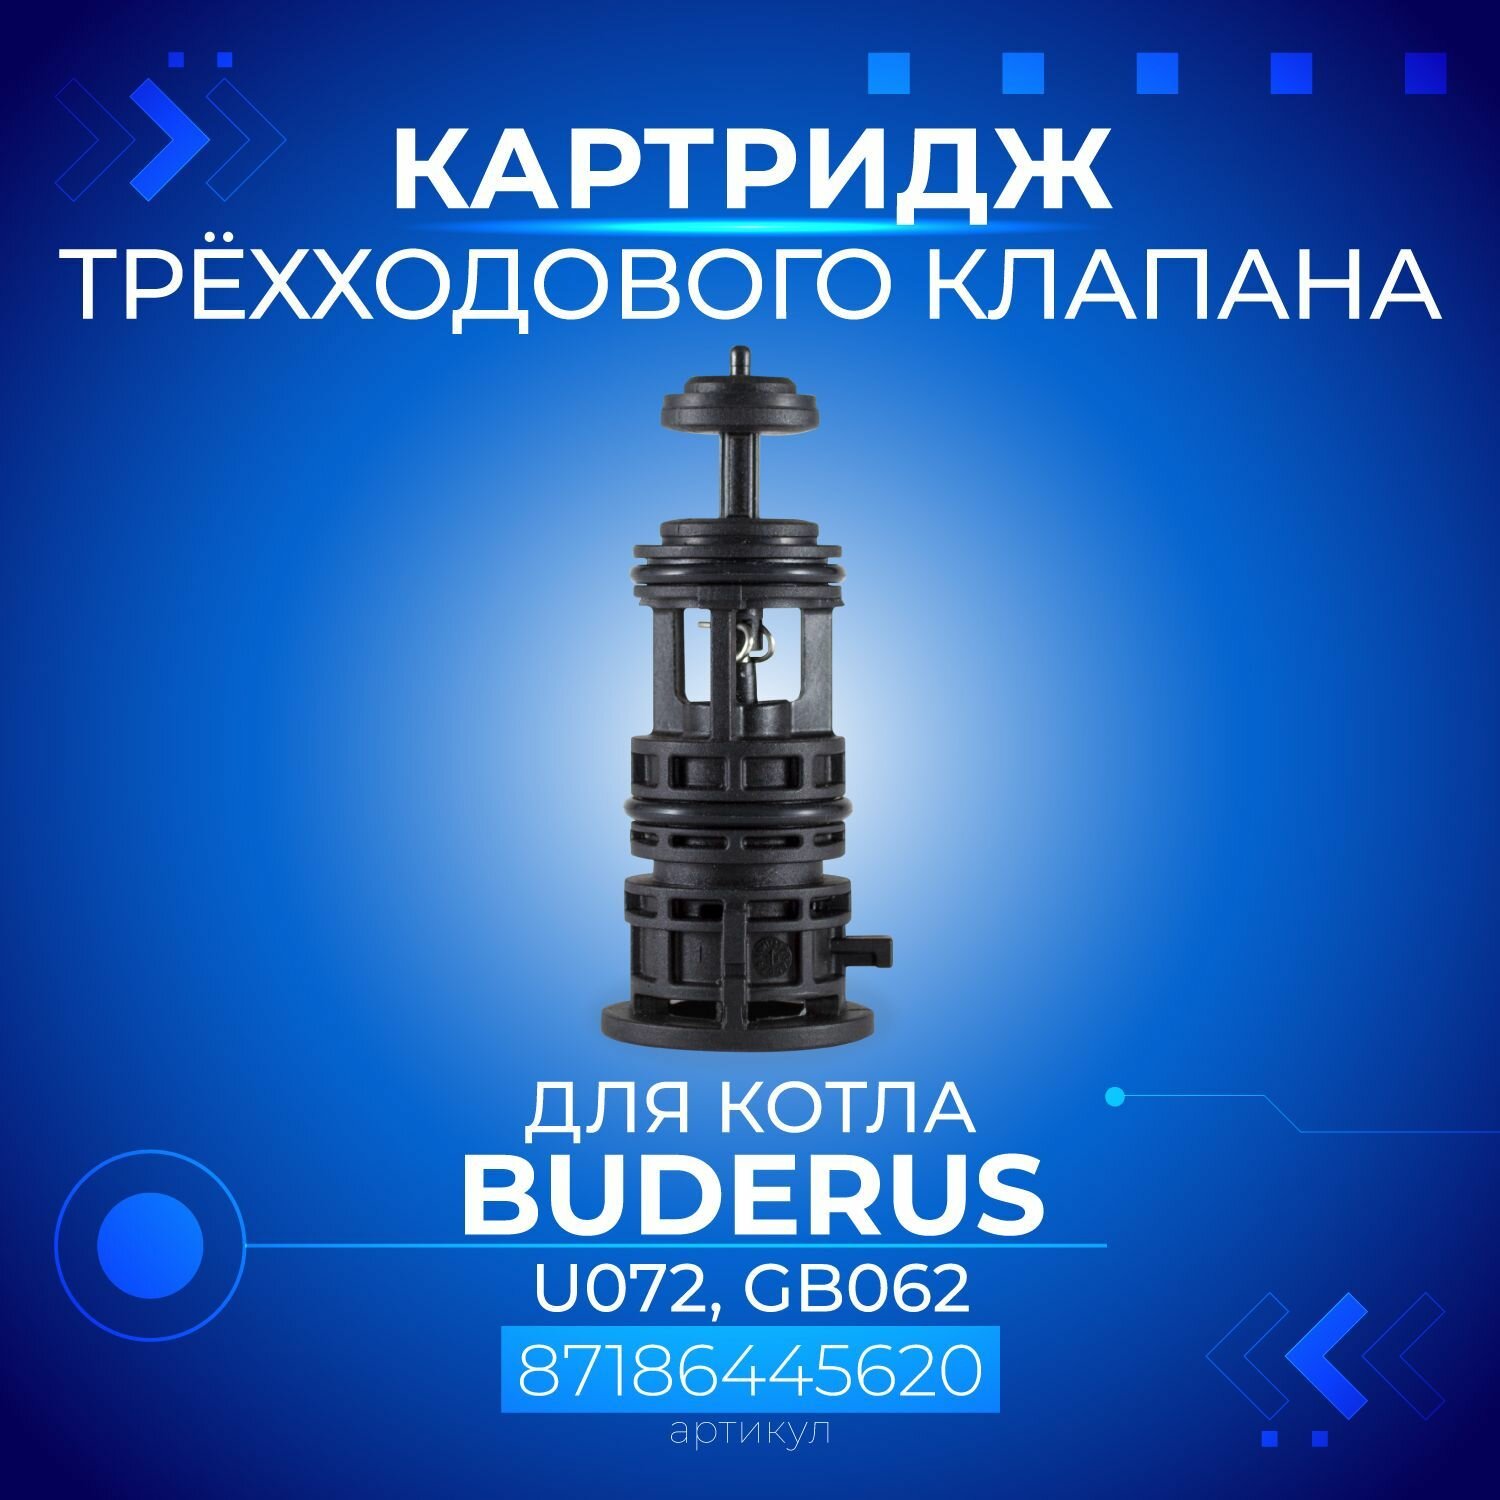 Картридж 3-х ходового клапана для котла BUDERUS моделей U072, GB062, 87186445620